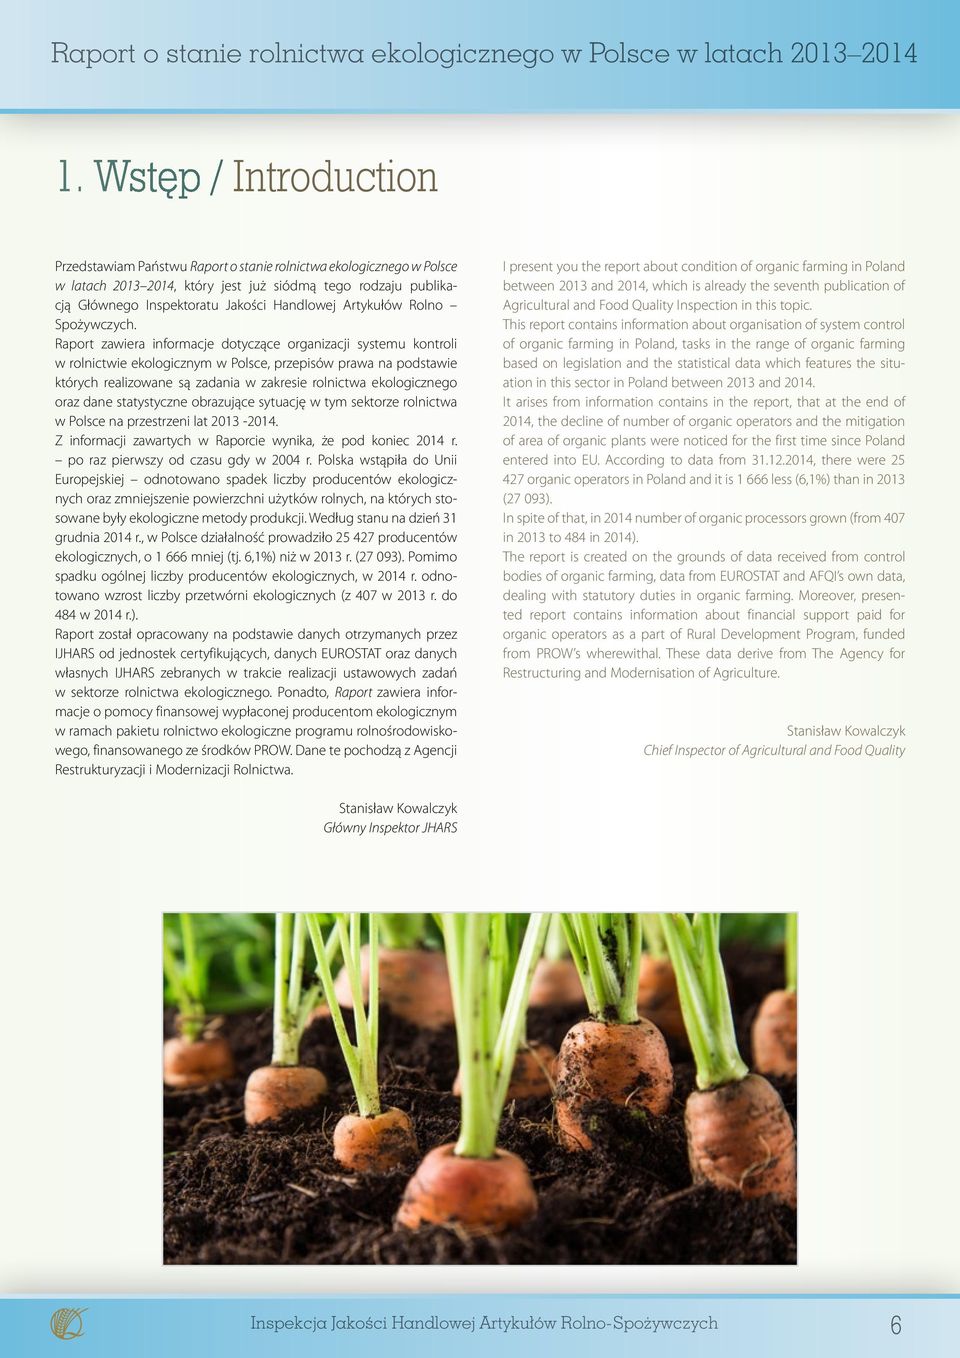 Raport zawiera informacje dotyczące organizacji systemu kontroli w rolnictwie ekologicznym w Polsce, przepisów prawa na podstawie których realizowane są zadania w zakresie rolnictwa ekologicznego